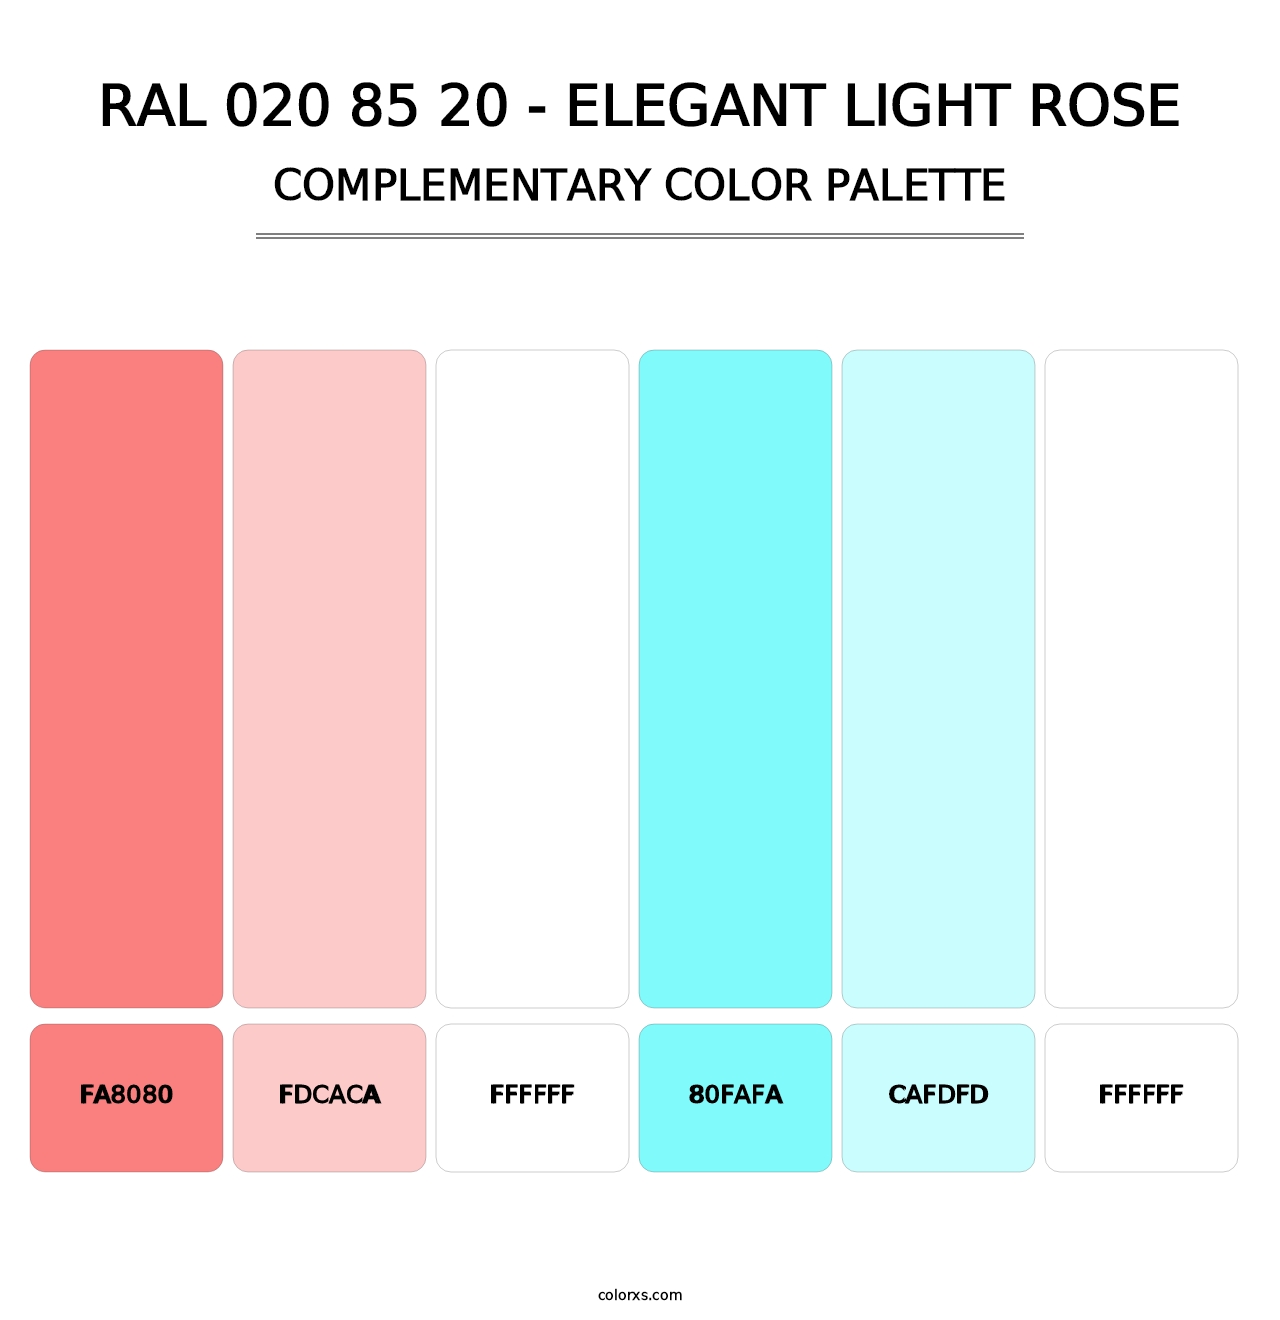 RAL 020 85 20 - Elegant Light Rose - Complementary Color Palette